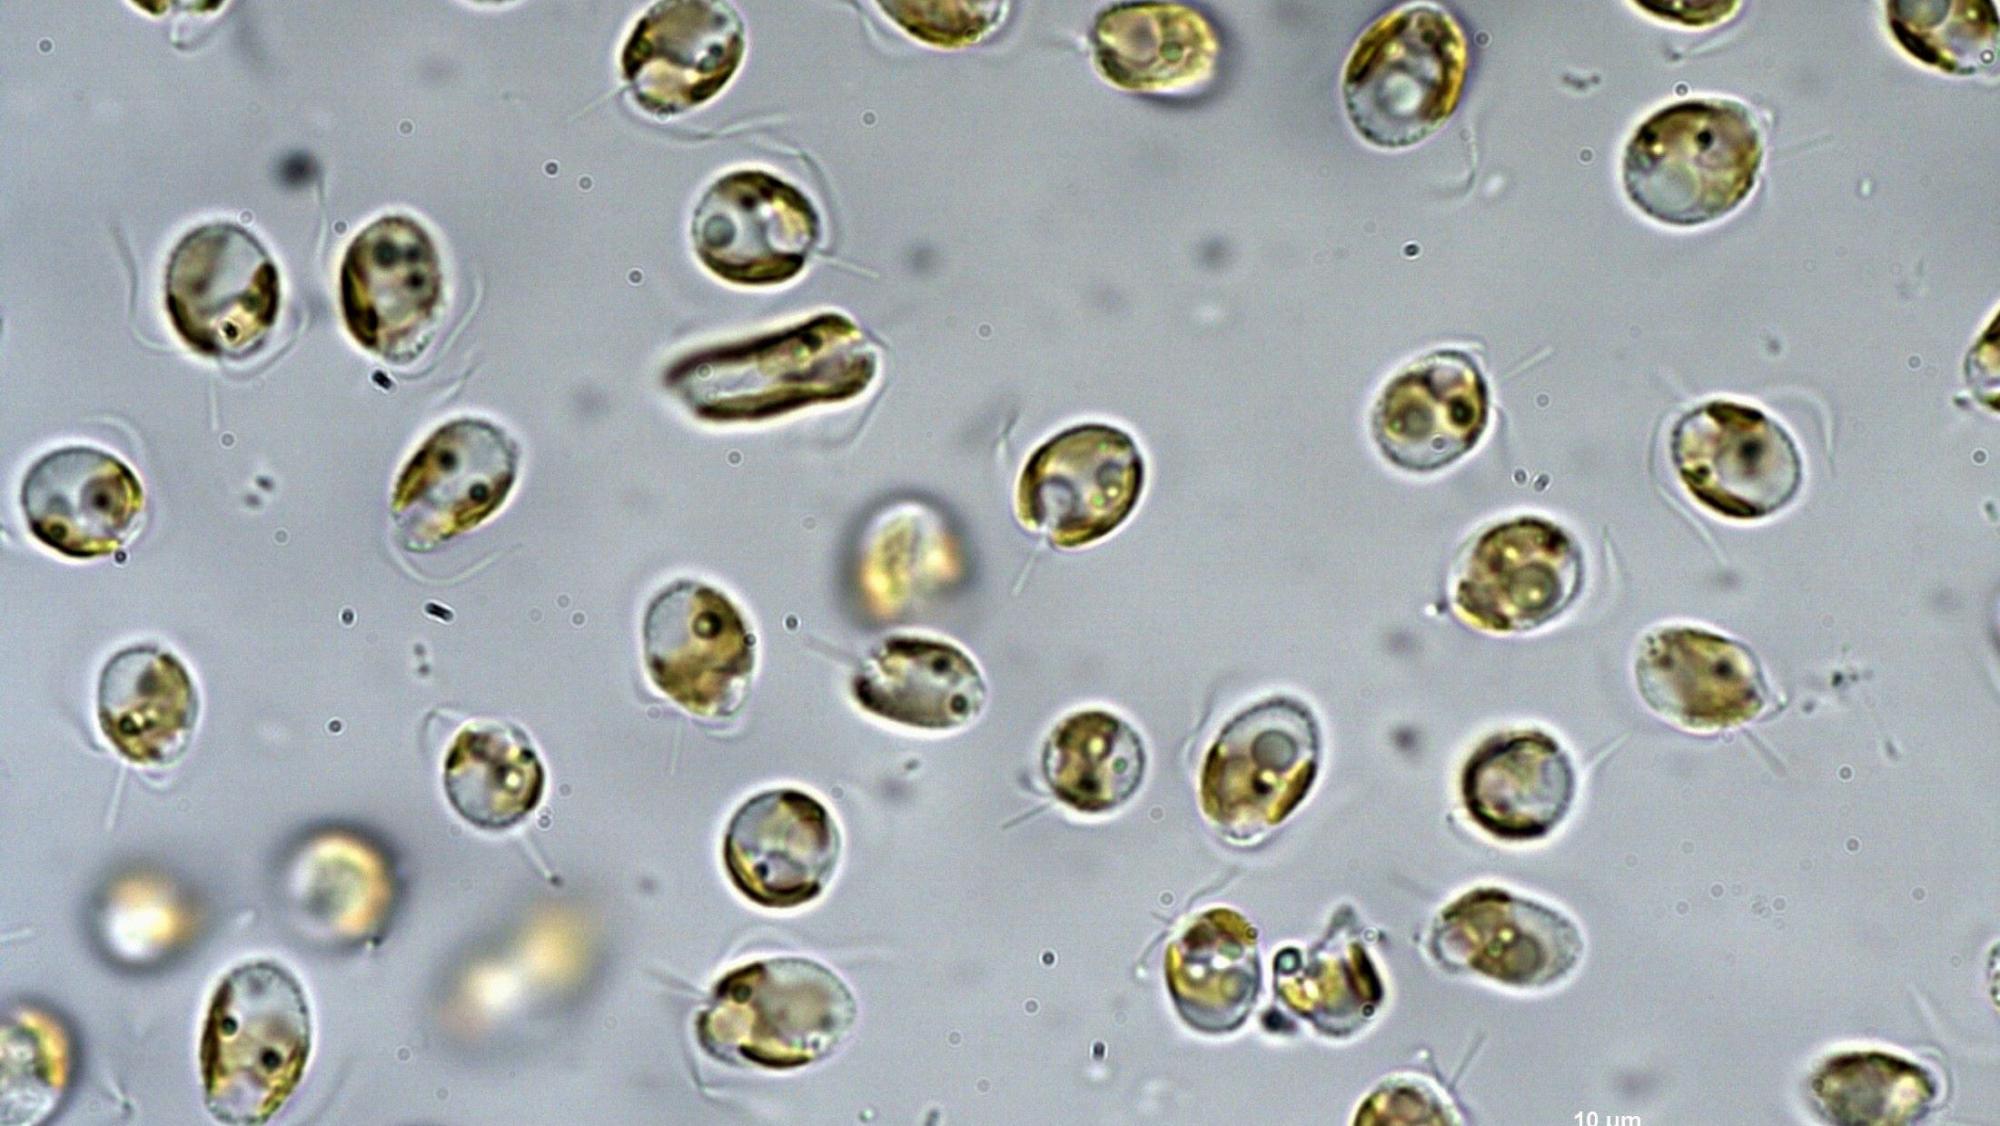 Die Giftalge Prymnesium parvum unter dem Mikroskop.